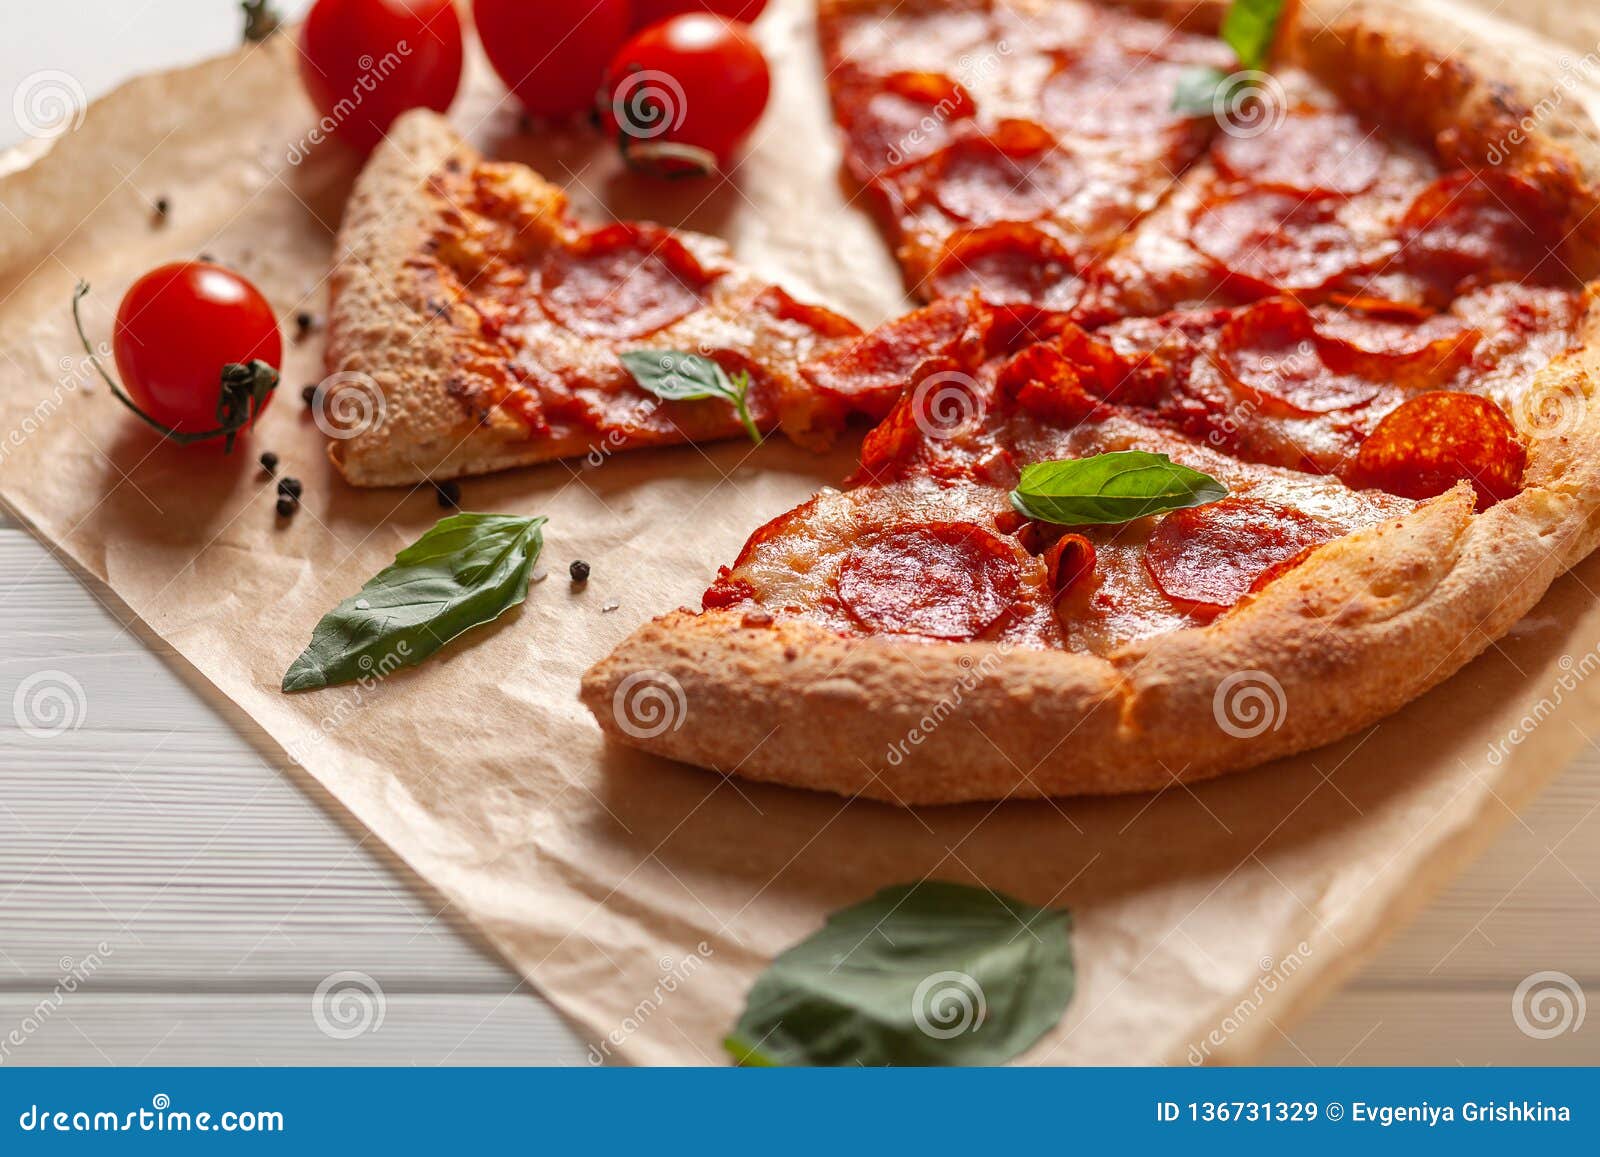 специи для пиццы пепперони фото 46